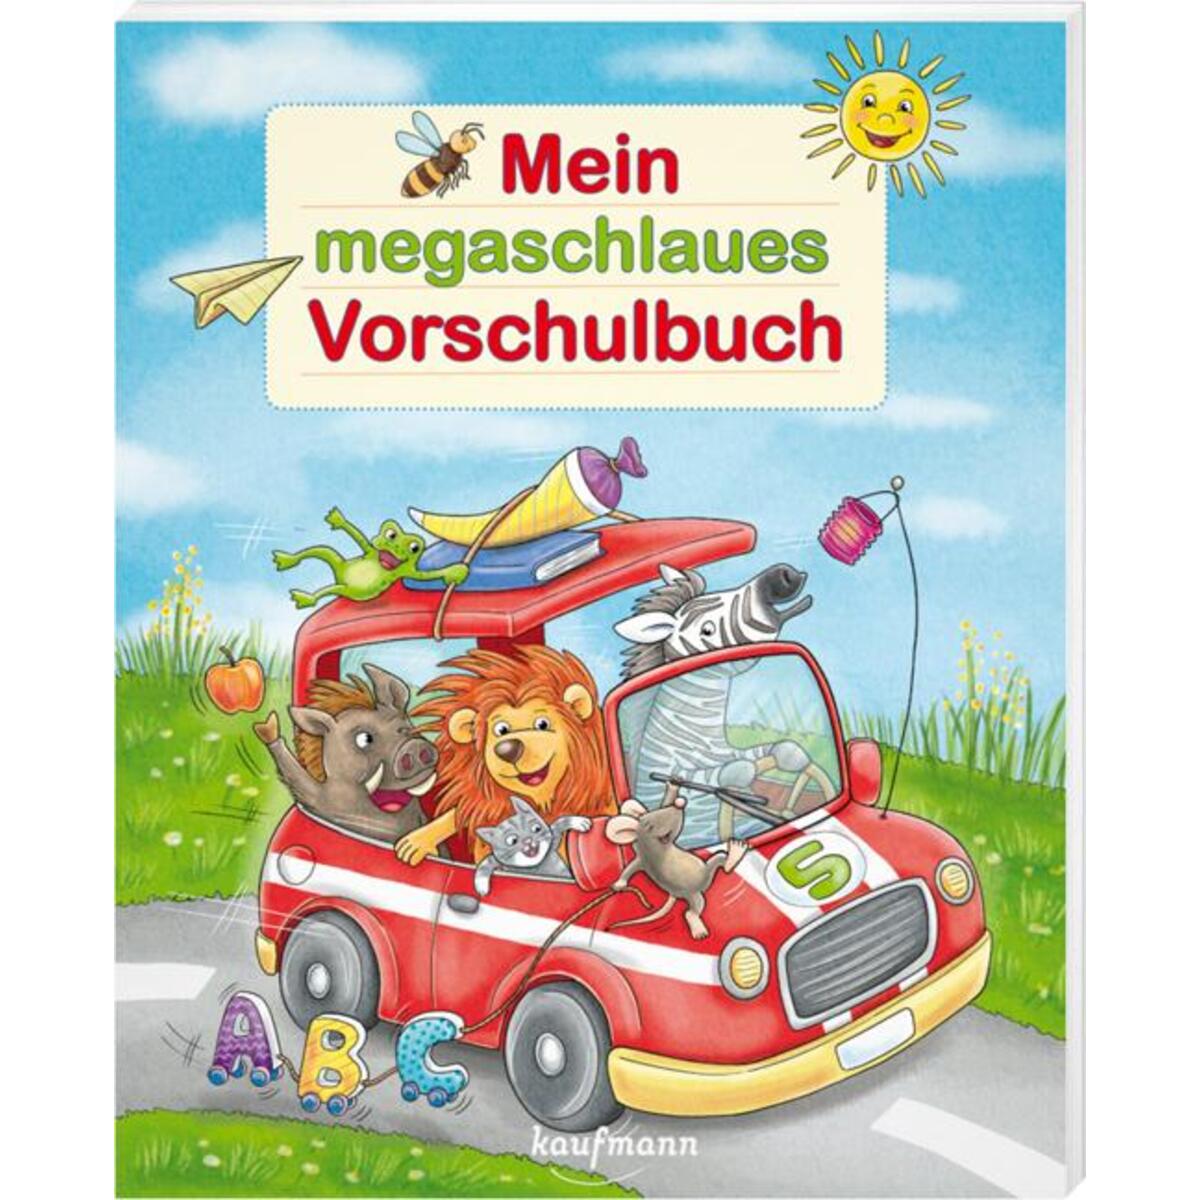 Mein megaschlaues Vorschulbuch von Kaufmann Ernst Vlg GmbH